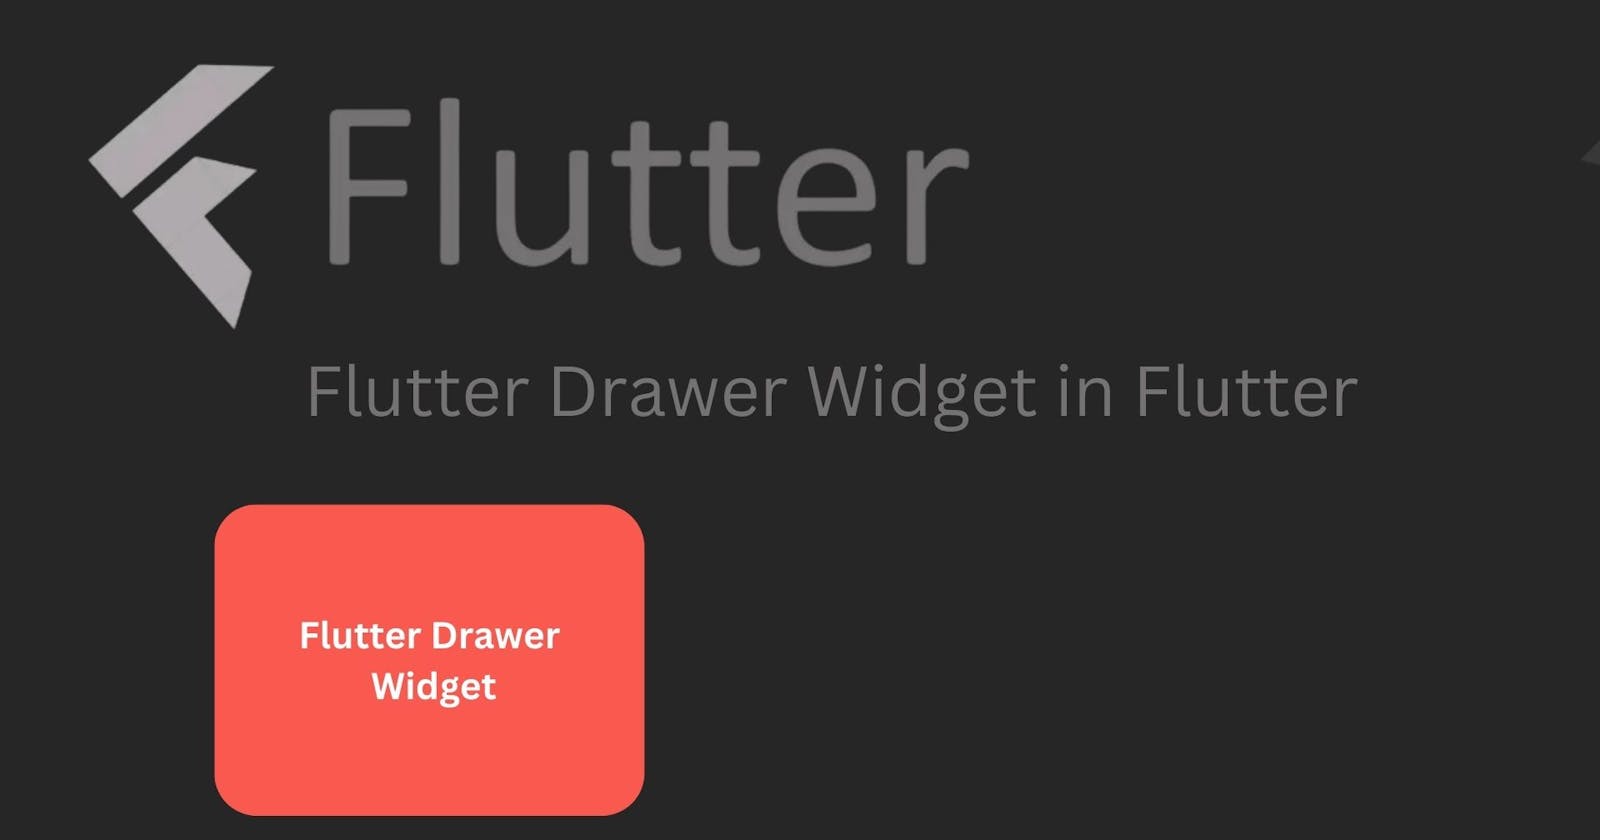 Drawer Widget in Flutter